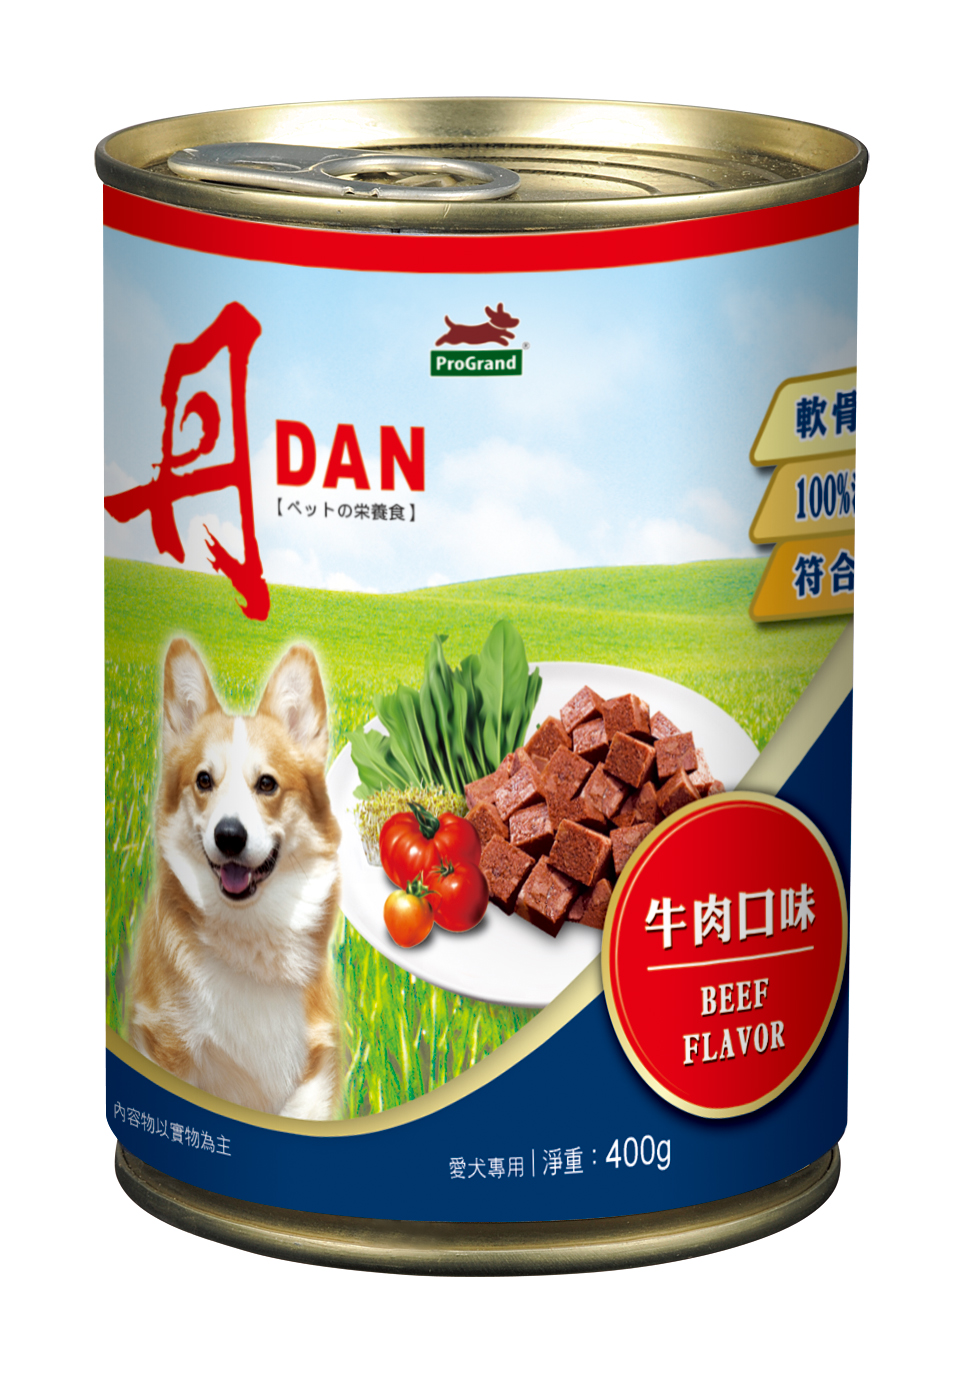 丹DAN 愛犬罐頭牛肉口味
DAN Canned Dog Food - Beef Flavor